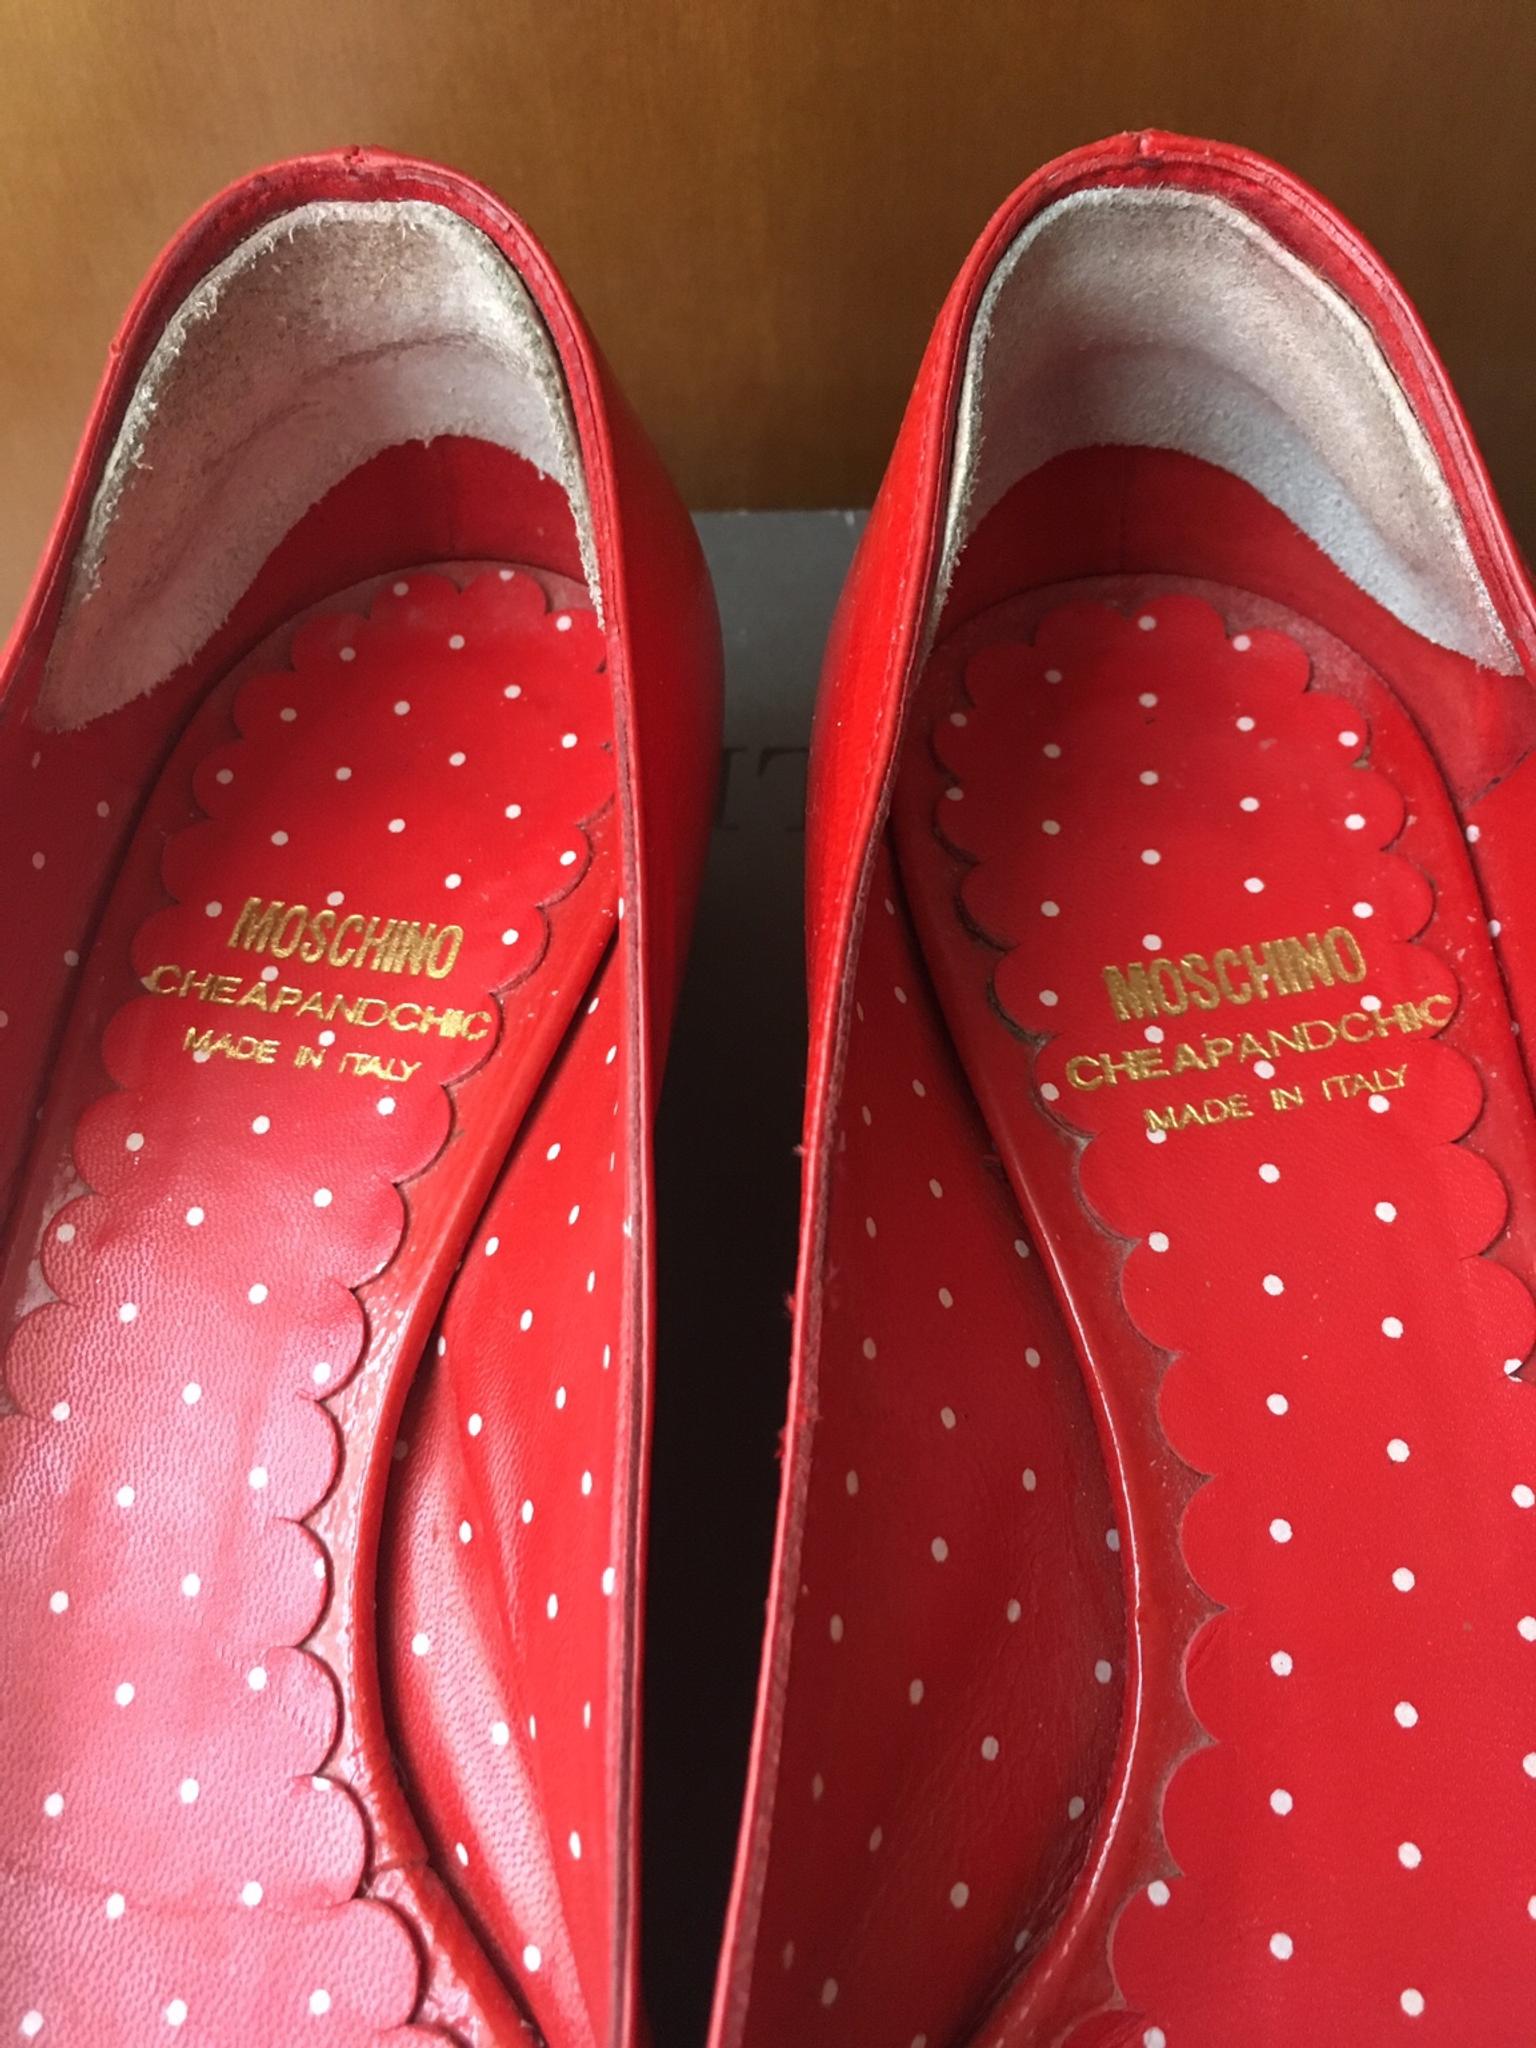 Scarpe Moschino rosse con coccarda tg.36 in 23848 Oggiono for €20.00 for  sale | Shpock